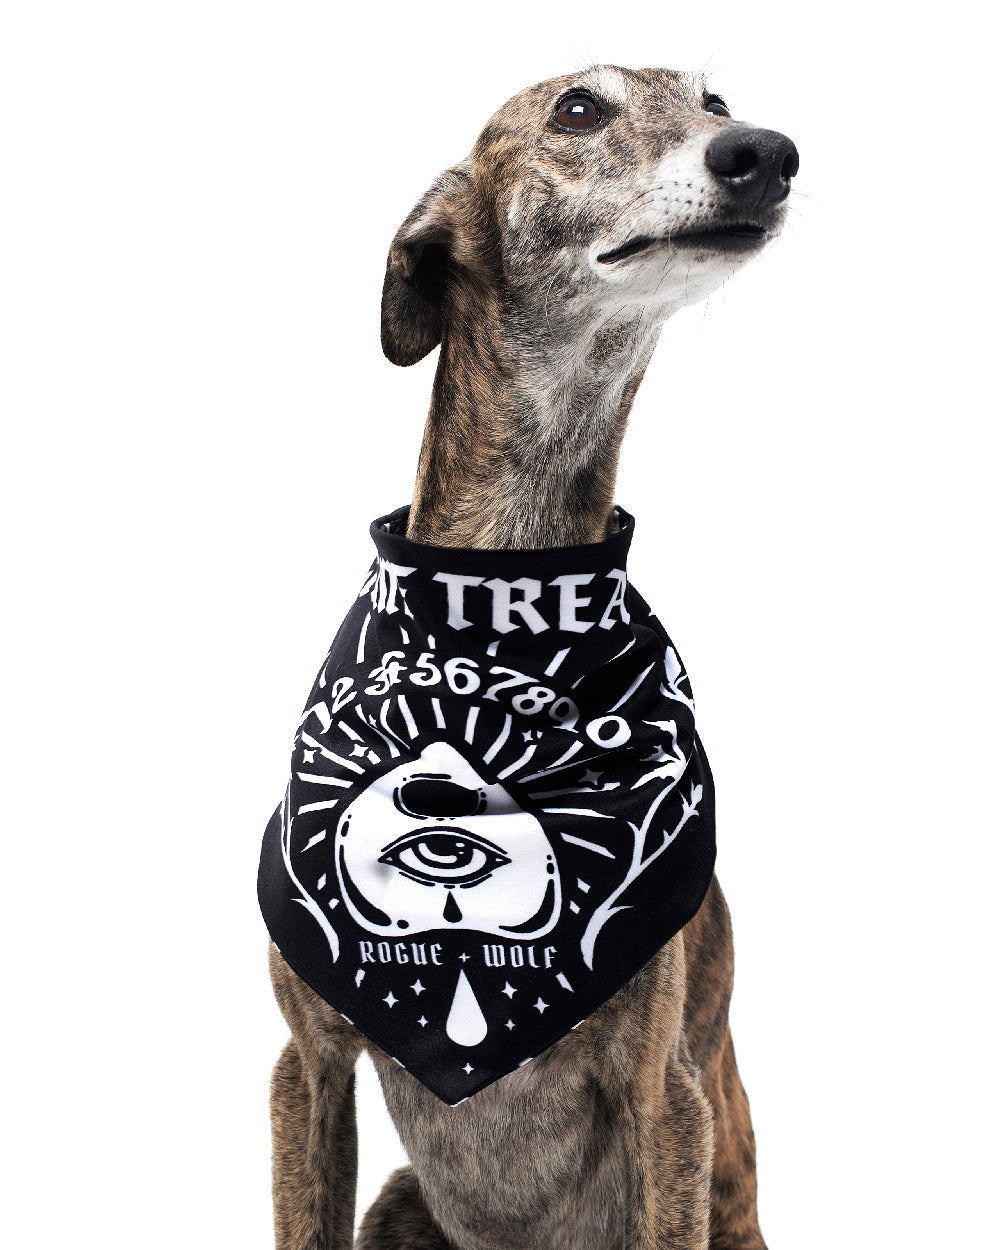 Give Me Treatos Ouija Pet Bandana - Dog or Cat